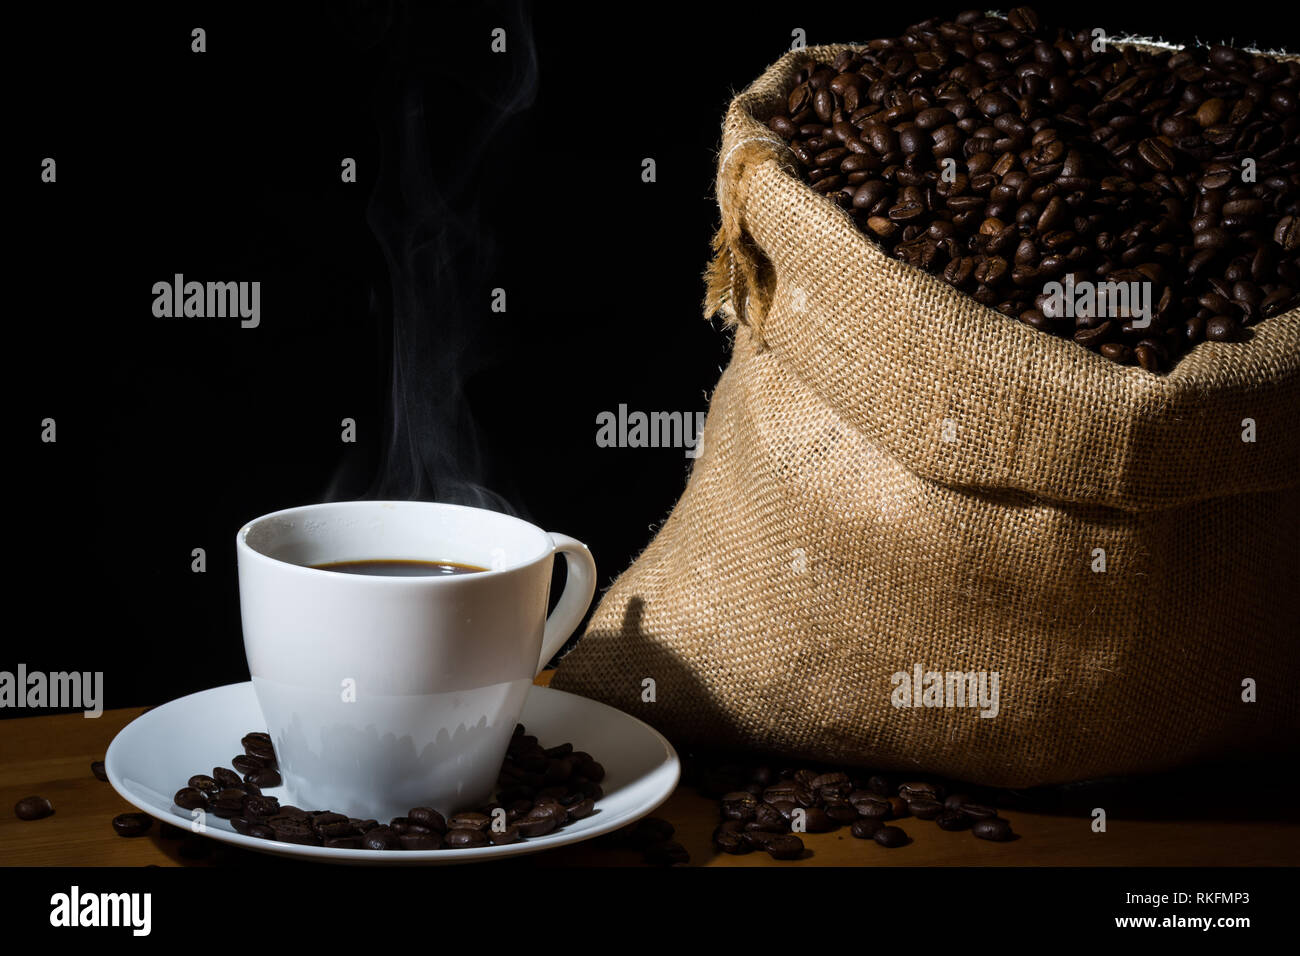 Café infusé dans une tasse blanche avec de la vapeur ou de la vapeur et les grains de café dans une toile de jute sac en toile de jute et les haricots éparpillés sur une surface en bois. Banque D'Images